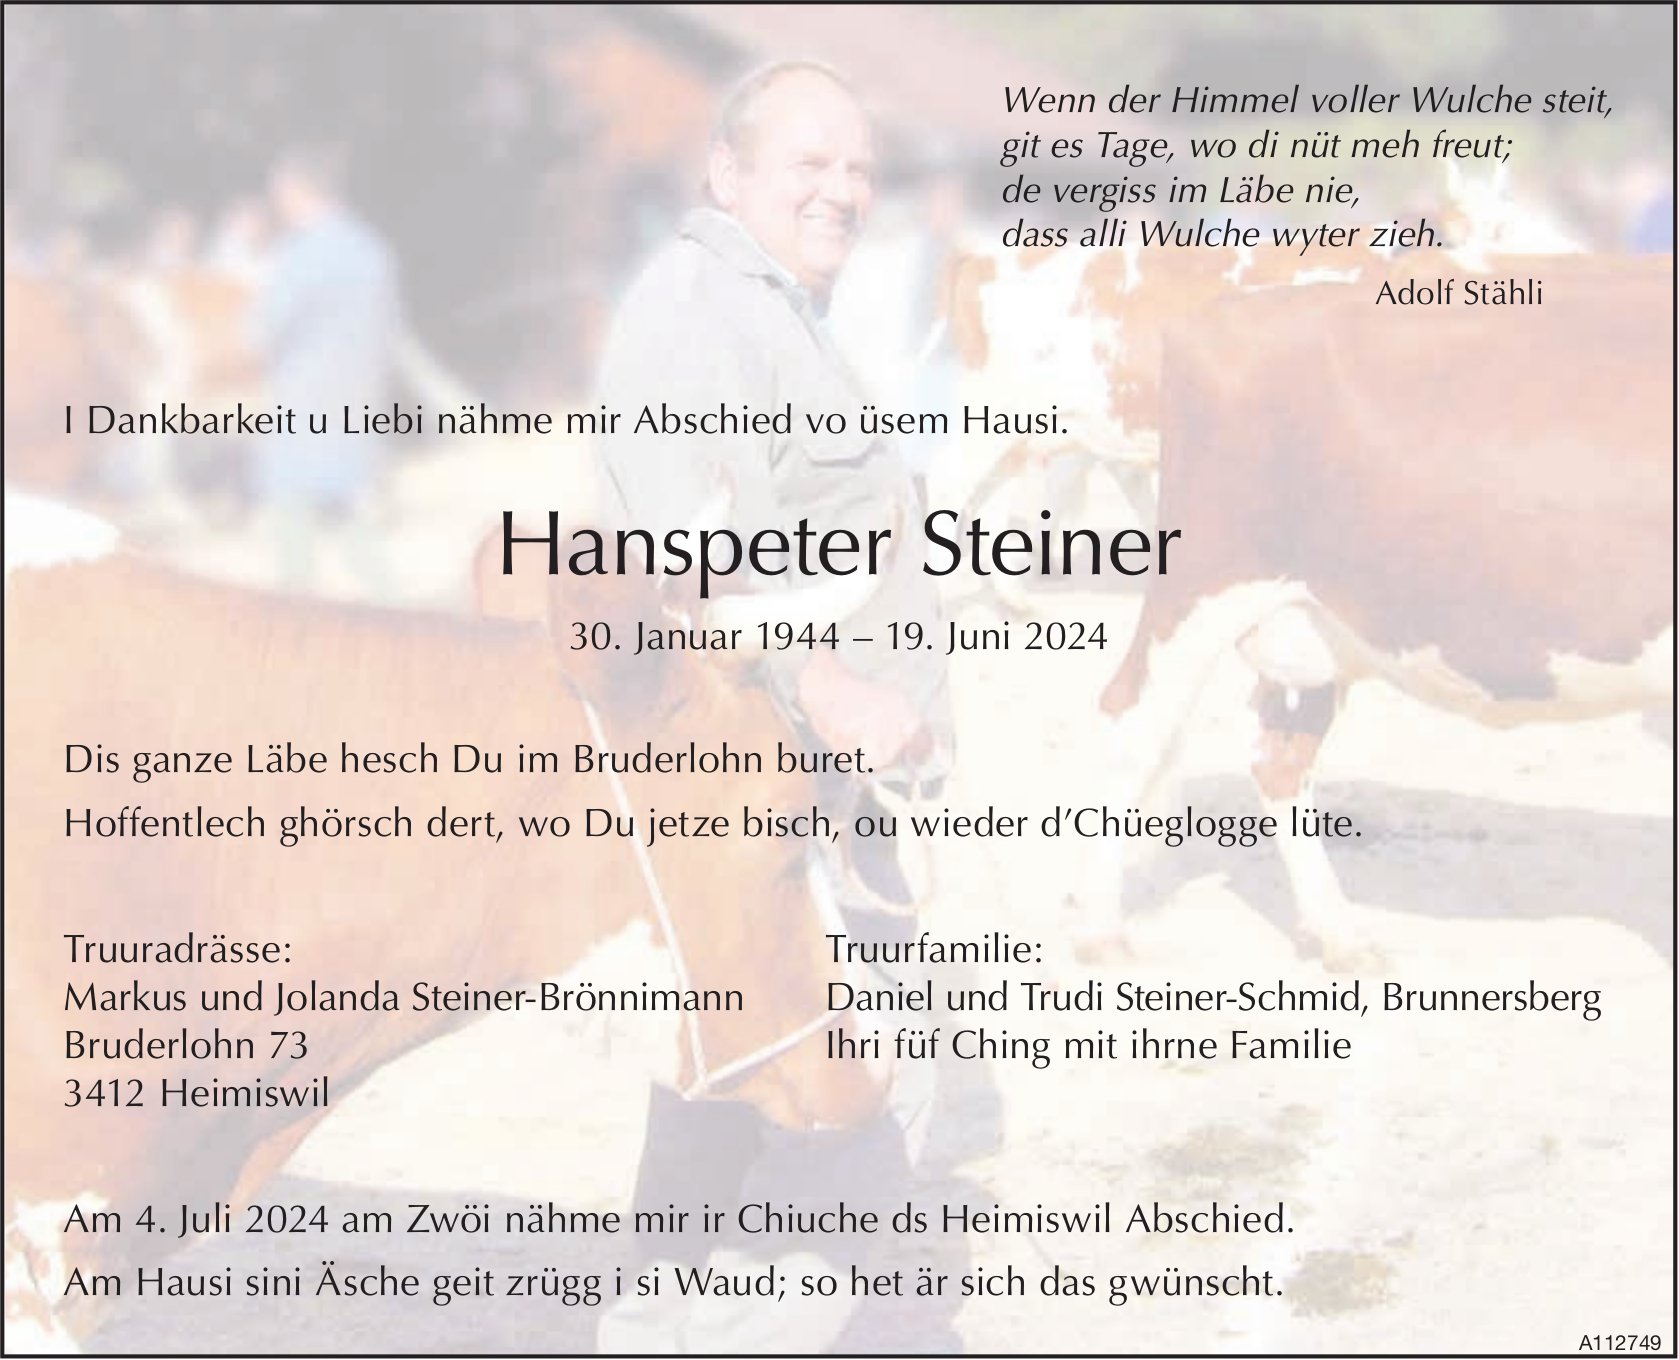 Hanspeter Steiner, Juni 2024 / TA